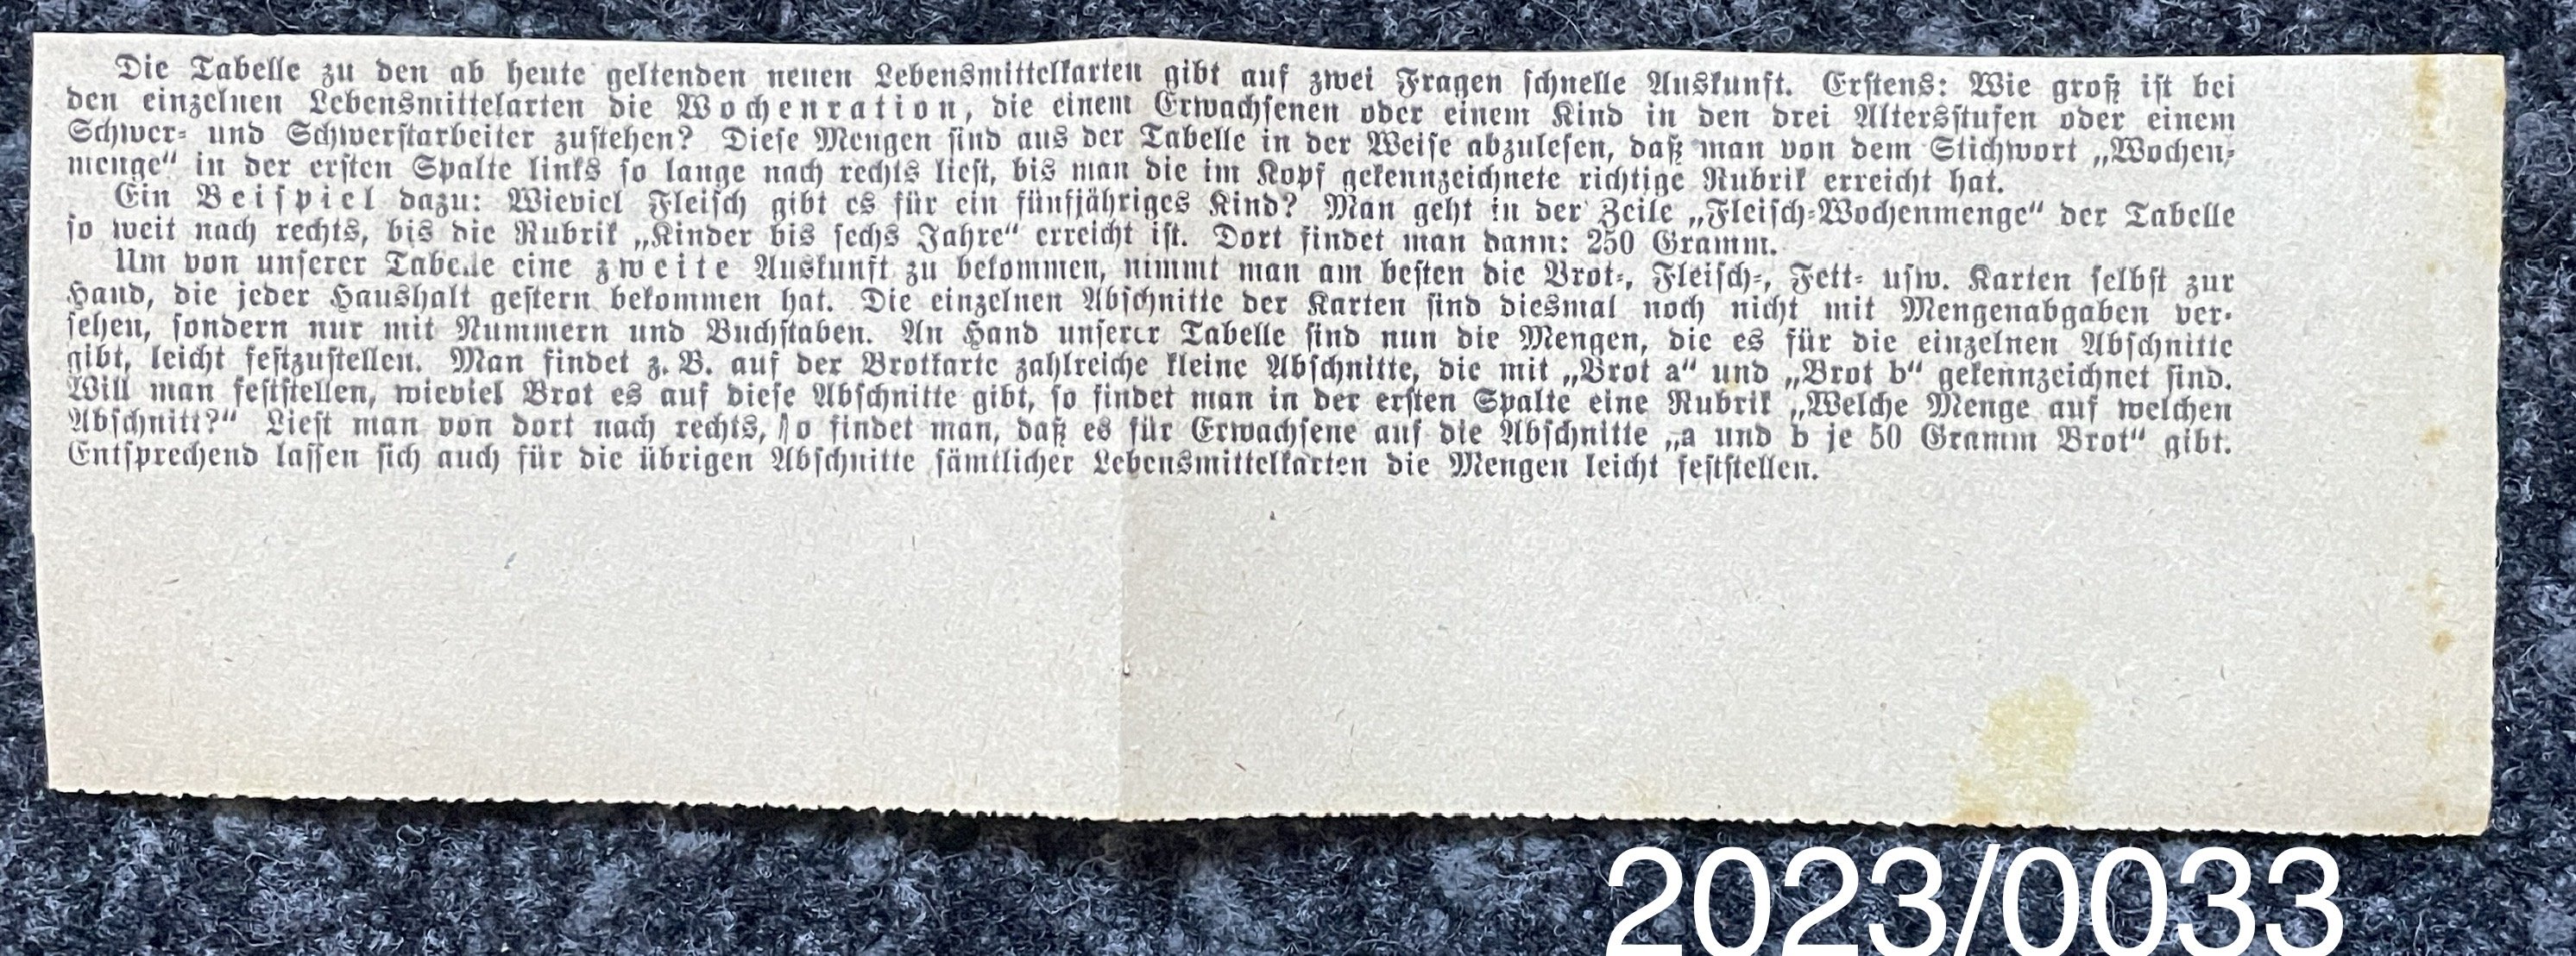 Zeitungsausschnitt bezüglich Rationsmenge Bezugsscheine (Stadtmuseum Bad Dürkheim im Kulturzentrum Haus Catoir CC BY-NC-SA)